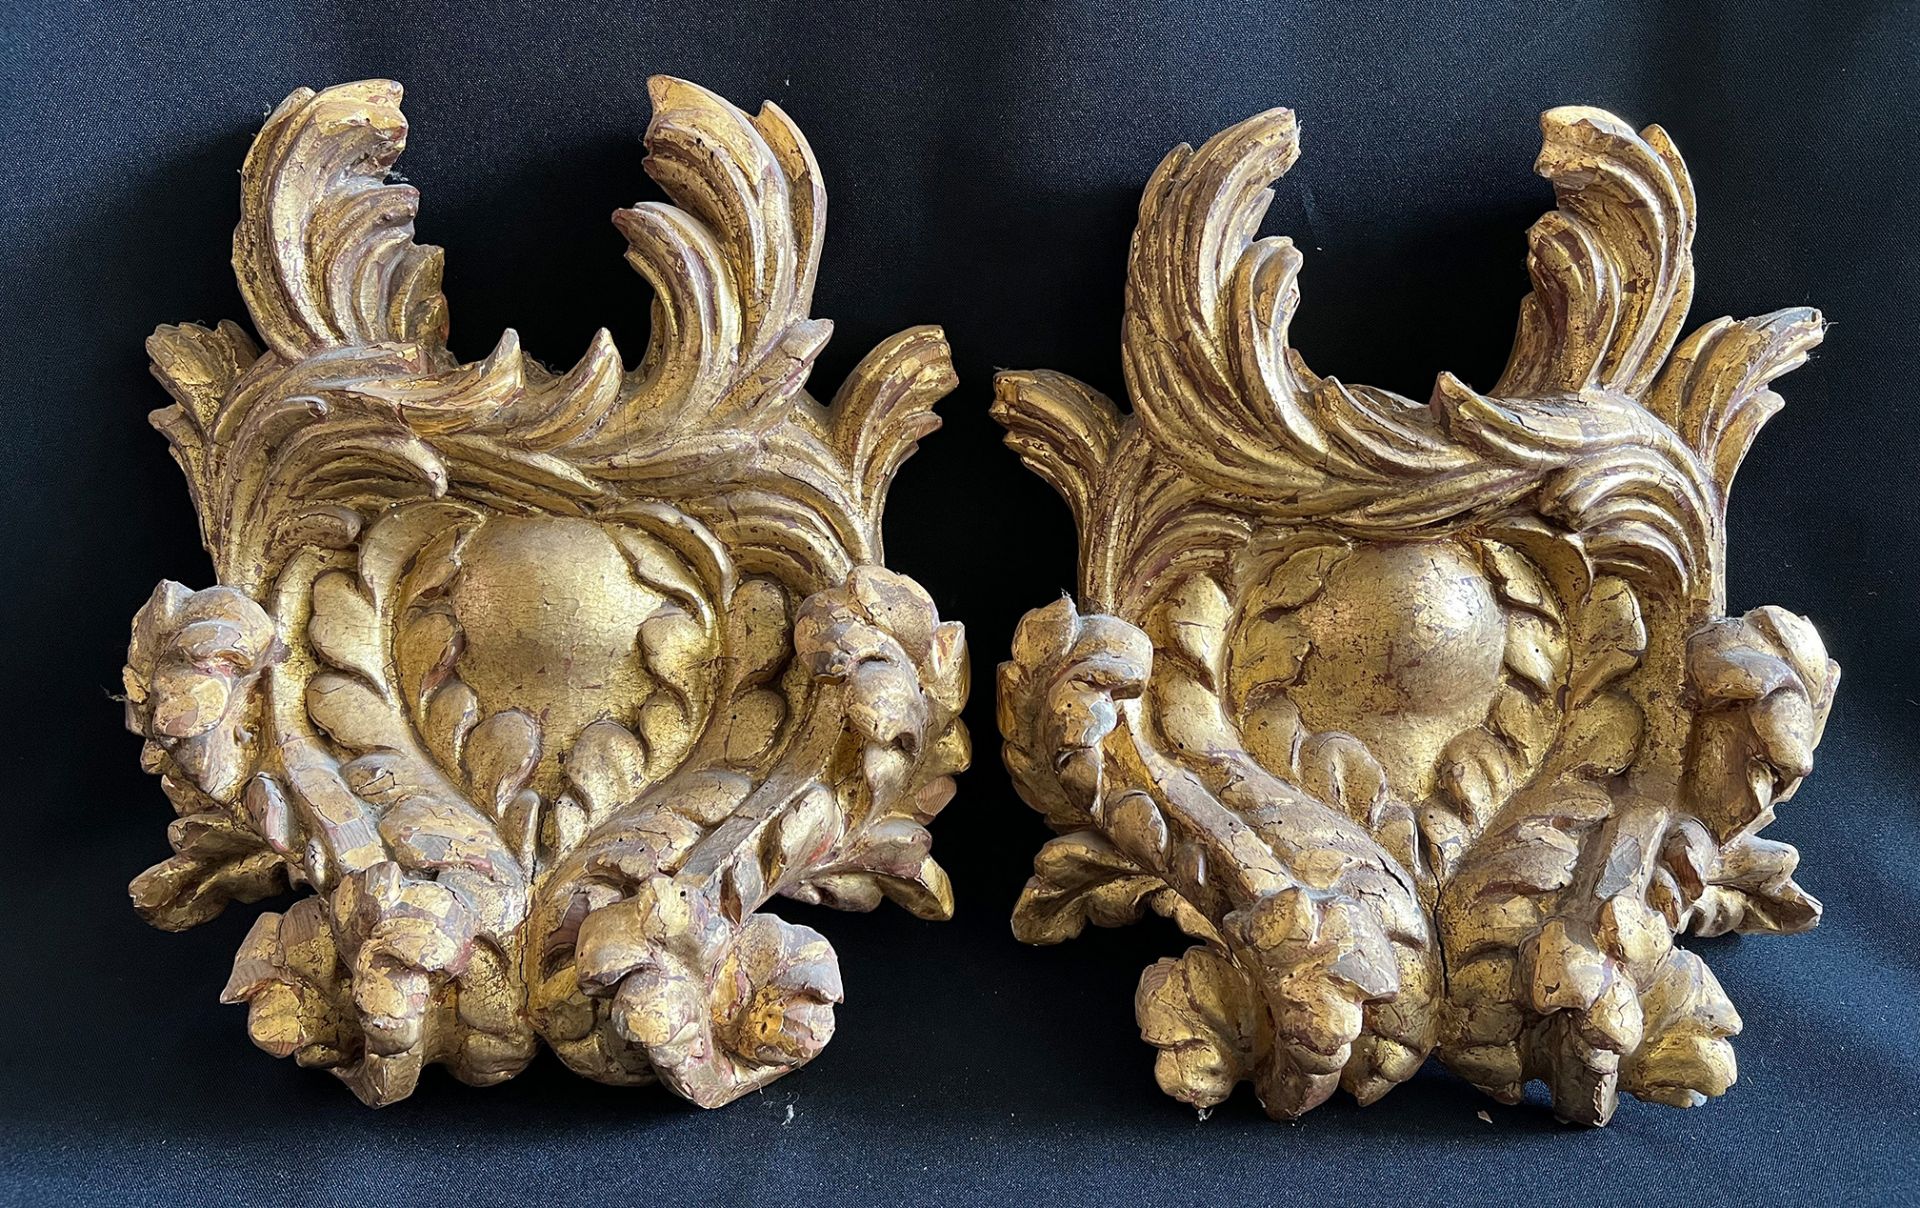 2 Ornamente, Barock, 18. Jh., aufwändig geschnitzt, Holz, vergoldet, Altersspuren, 1 x rücks.